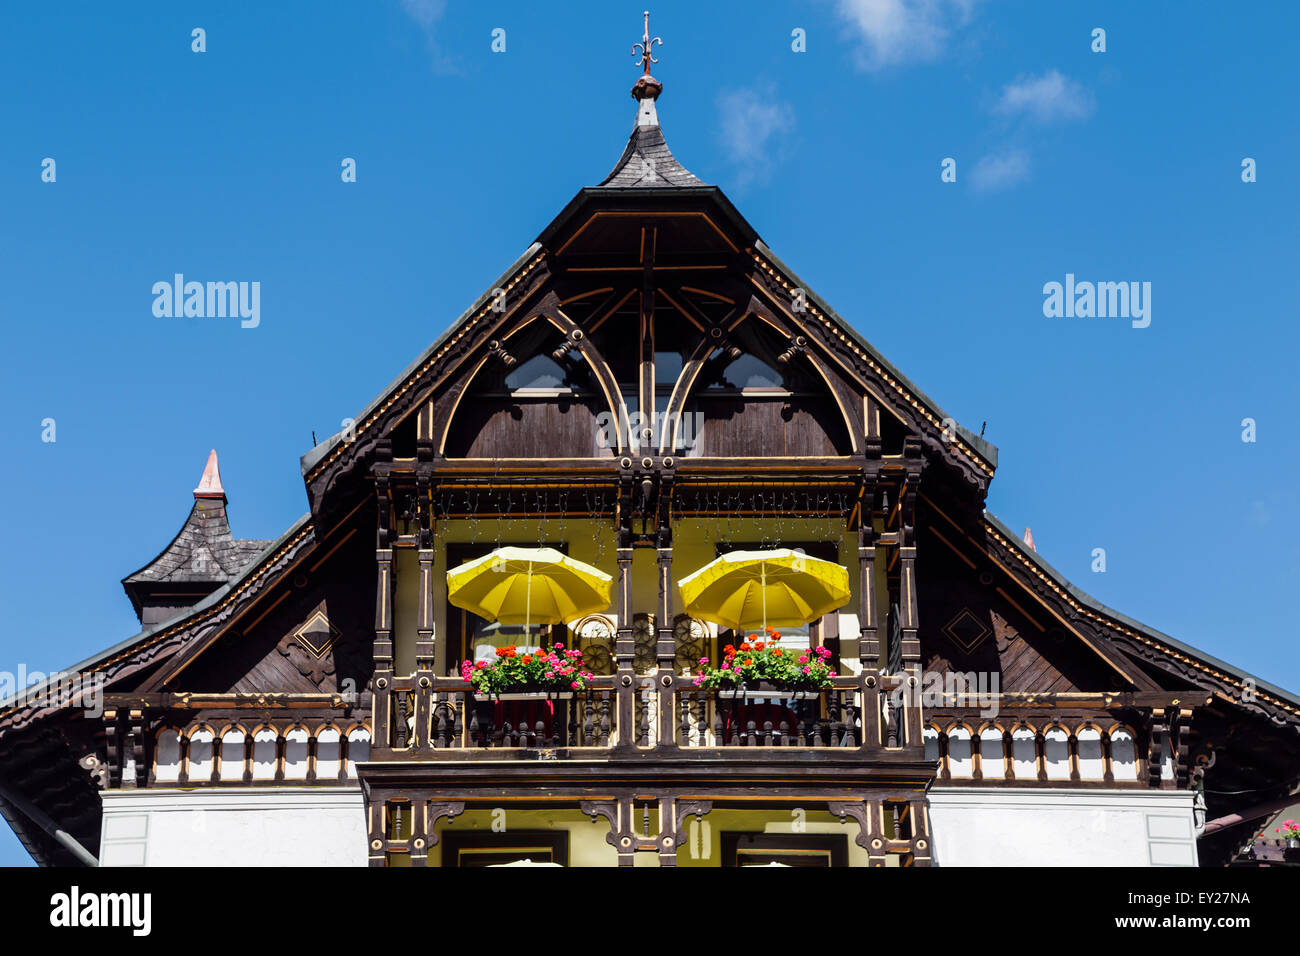 Hotel Restaurant Pfaff, Triberg, Black Forest, Germany Stock Photo